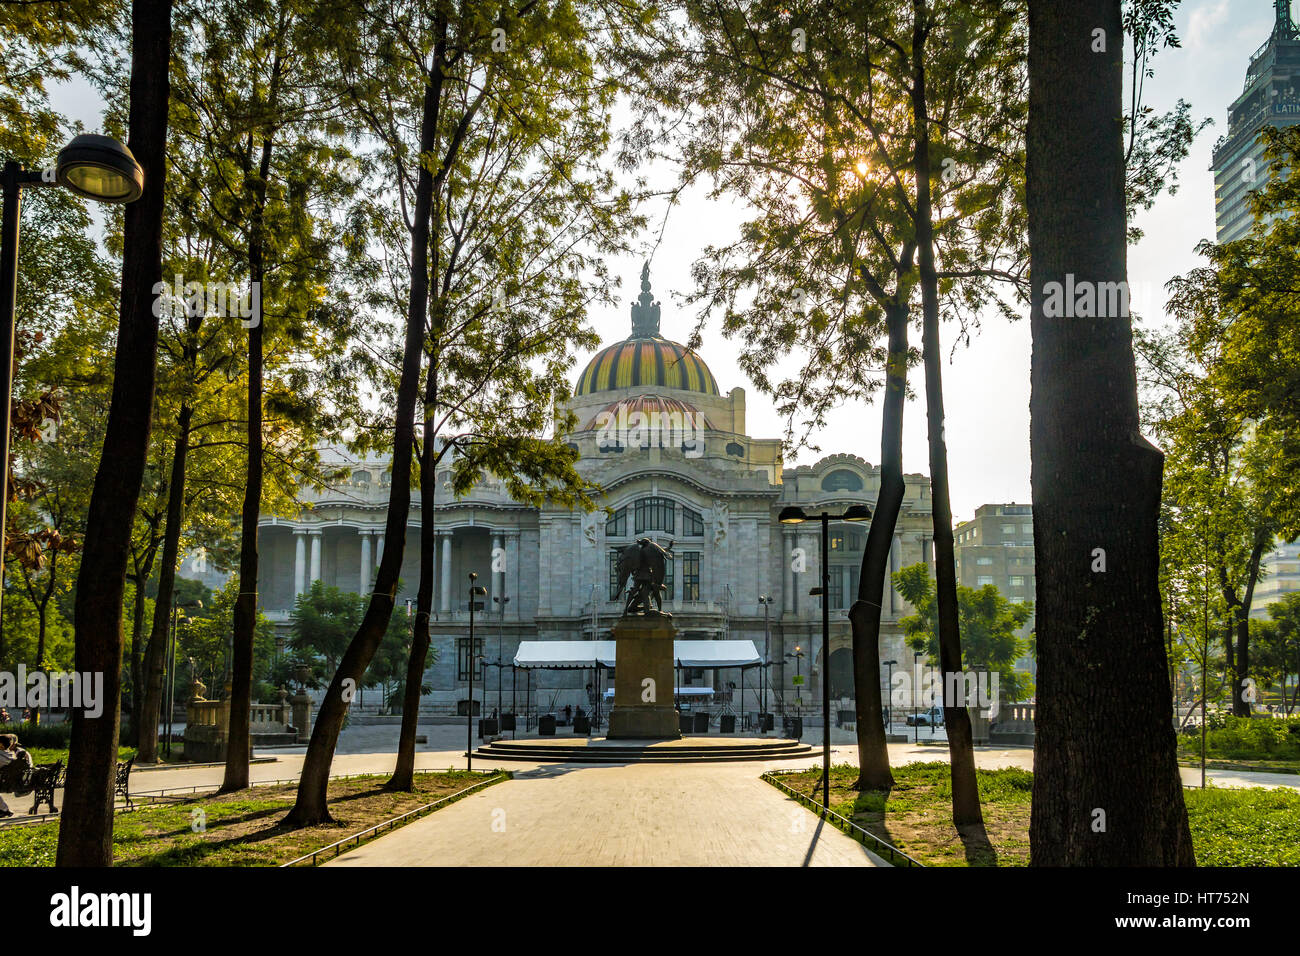 Palacio de Bellas Artes (Fine Arts Palace) - Mexico City, Mexico Stock Photo